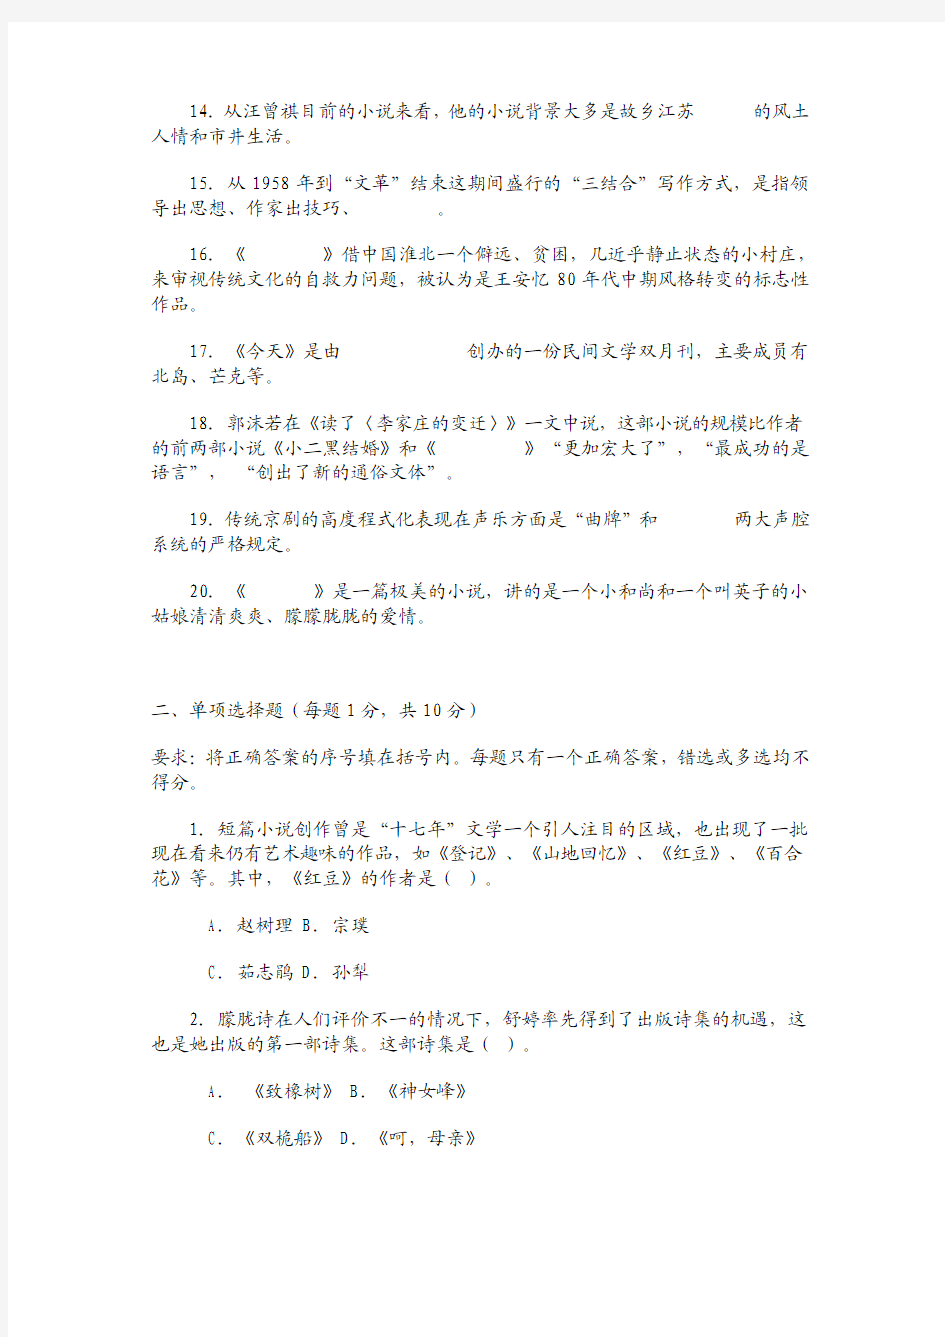 中国现当代文学专题(2)第二次平时作业